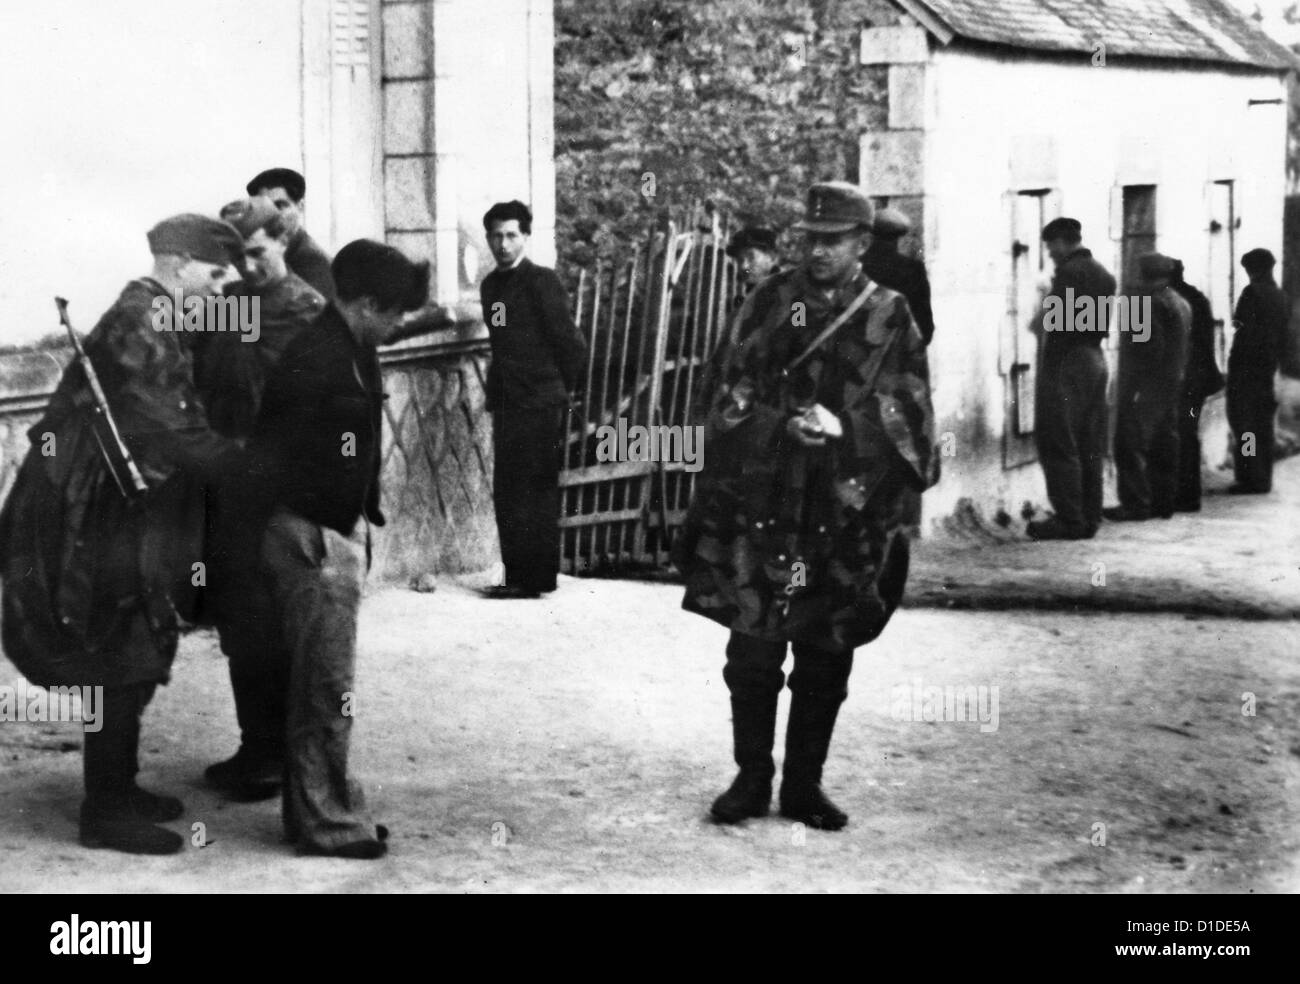 Des soldats de la Wehrmacht allemande arrêtent des partisans français dans un village de la région française de Bretagne le 3 août 1944. Fotoarchiv für Zeitgeschichte Banque D'Images